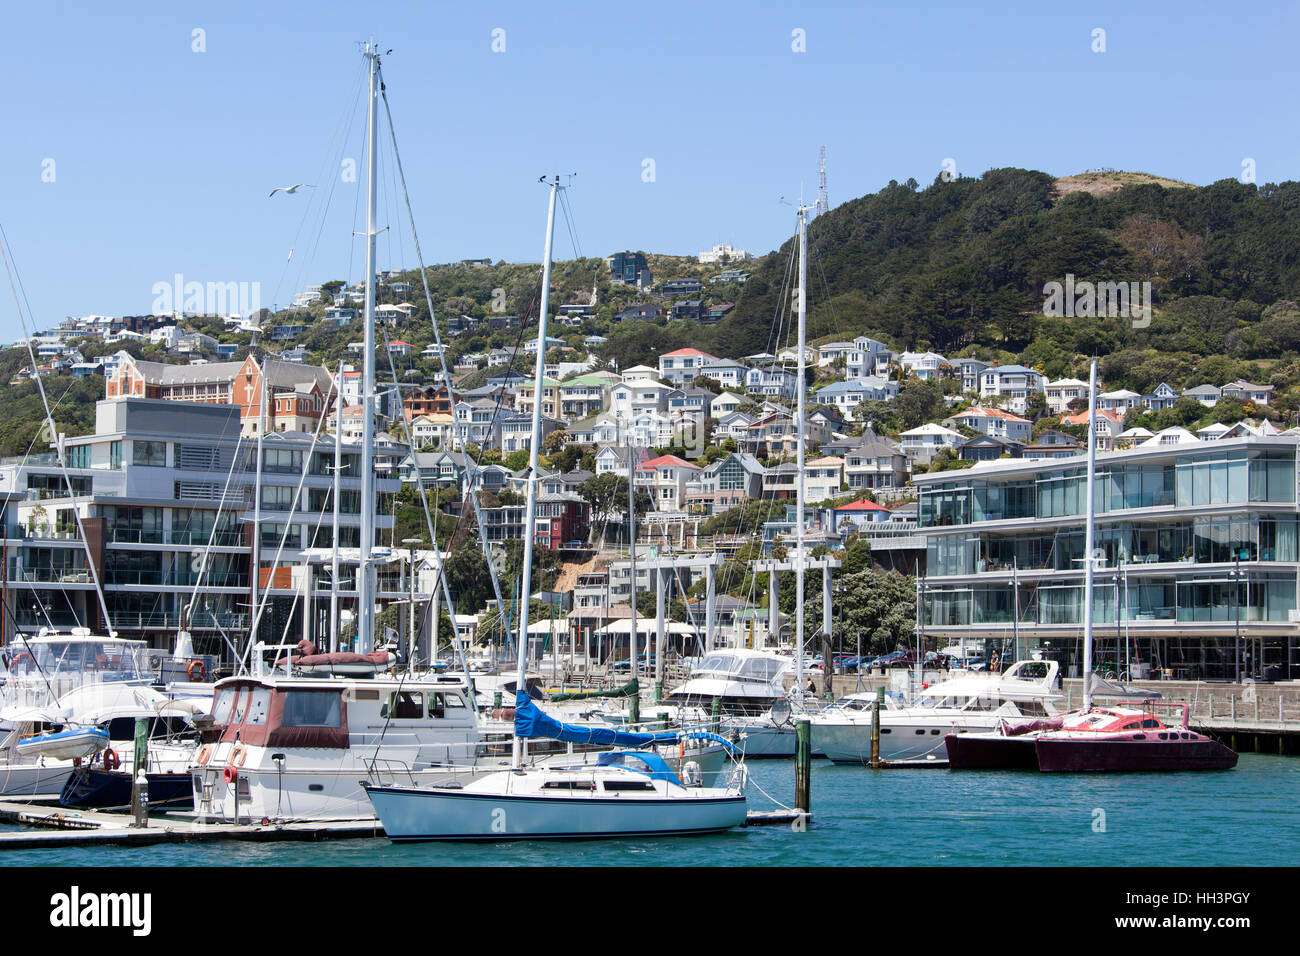 La vue sur la marina avec le Mont Victoria derrière (Wellington, Nouvelle-Zélande). Banque D'Images